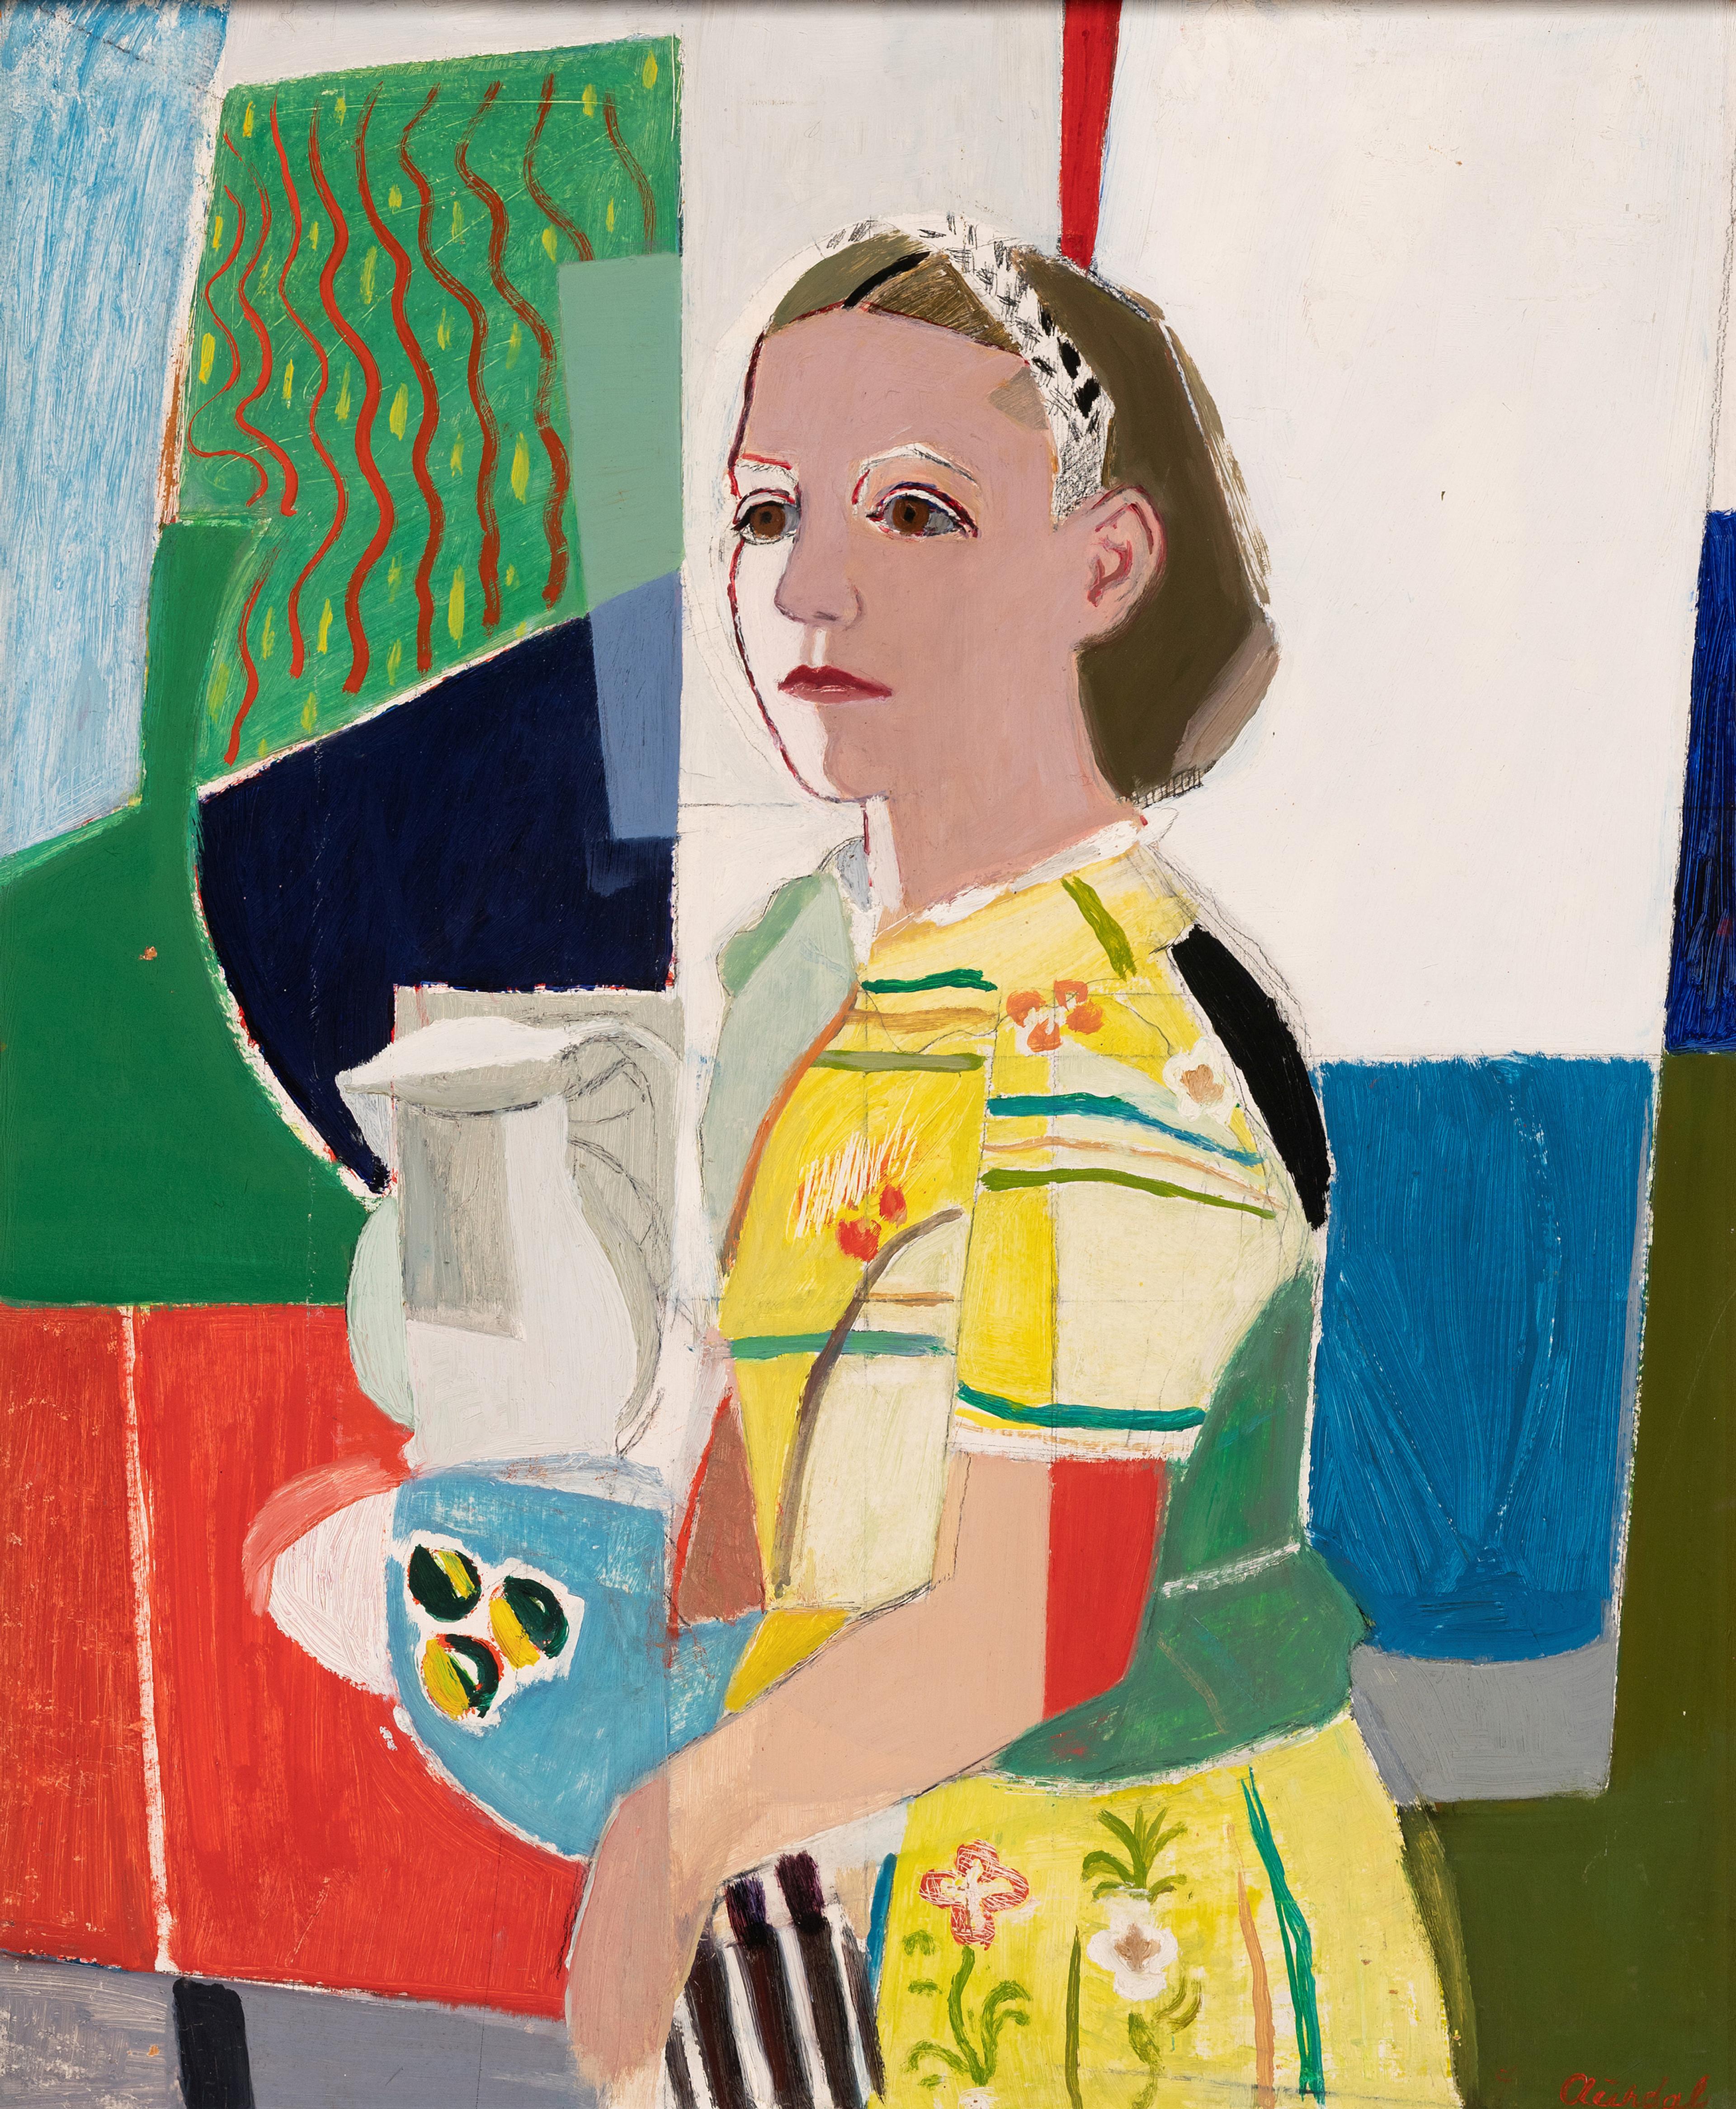 Maleri av en jente med gul kjole. Eksperimentelt i stilen med kantete fargefelt.